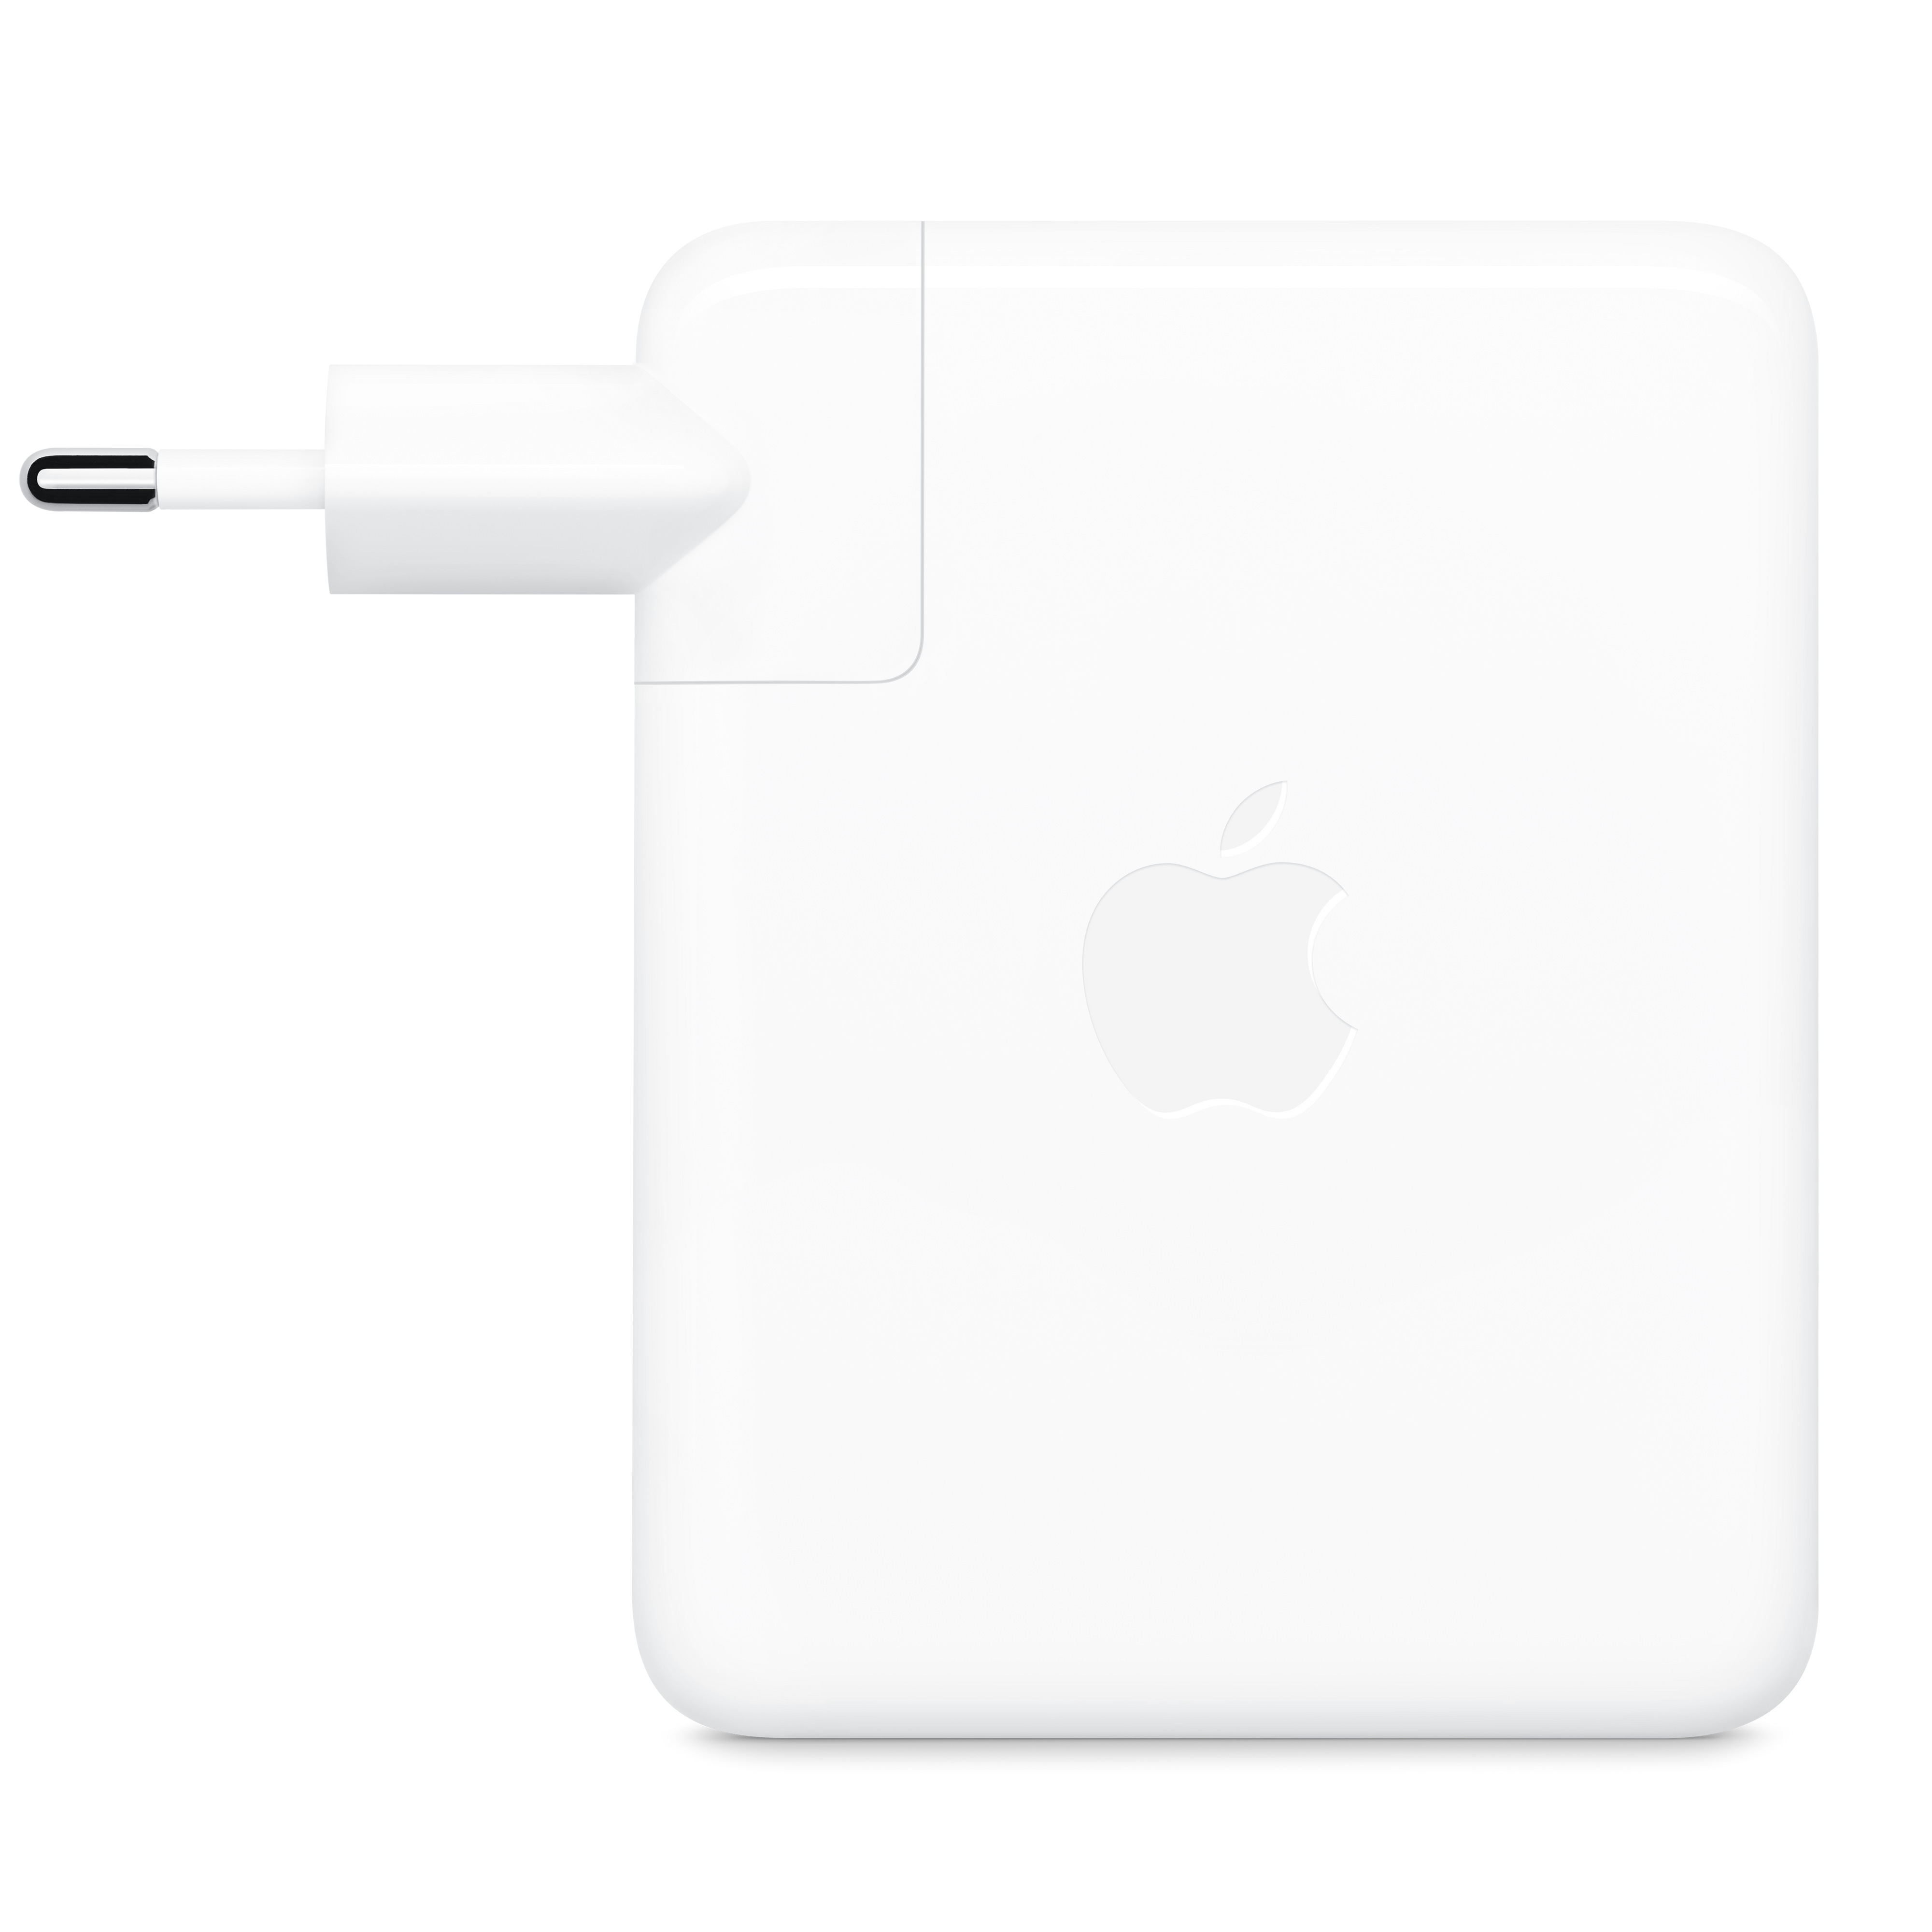 Adaptador de corriente USB-C de 140 W de Apple - iShop